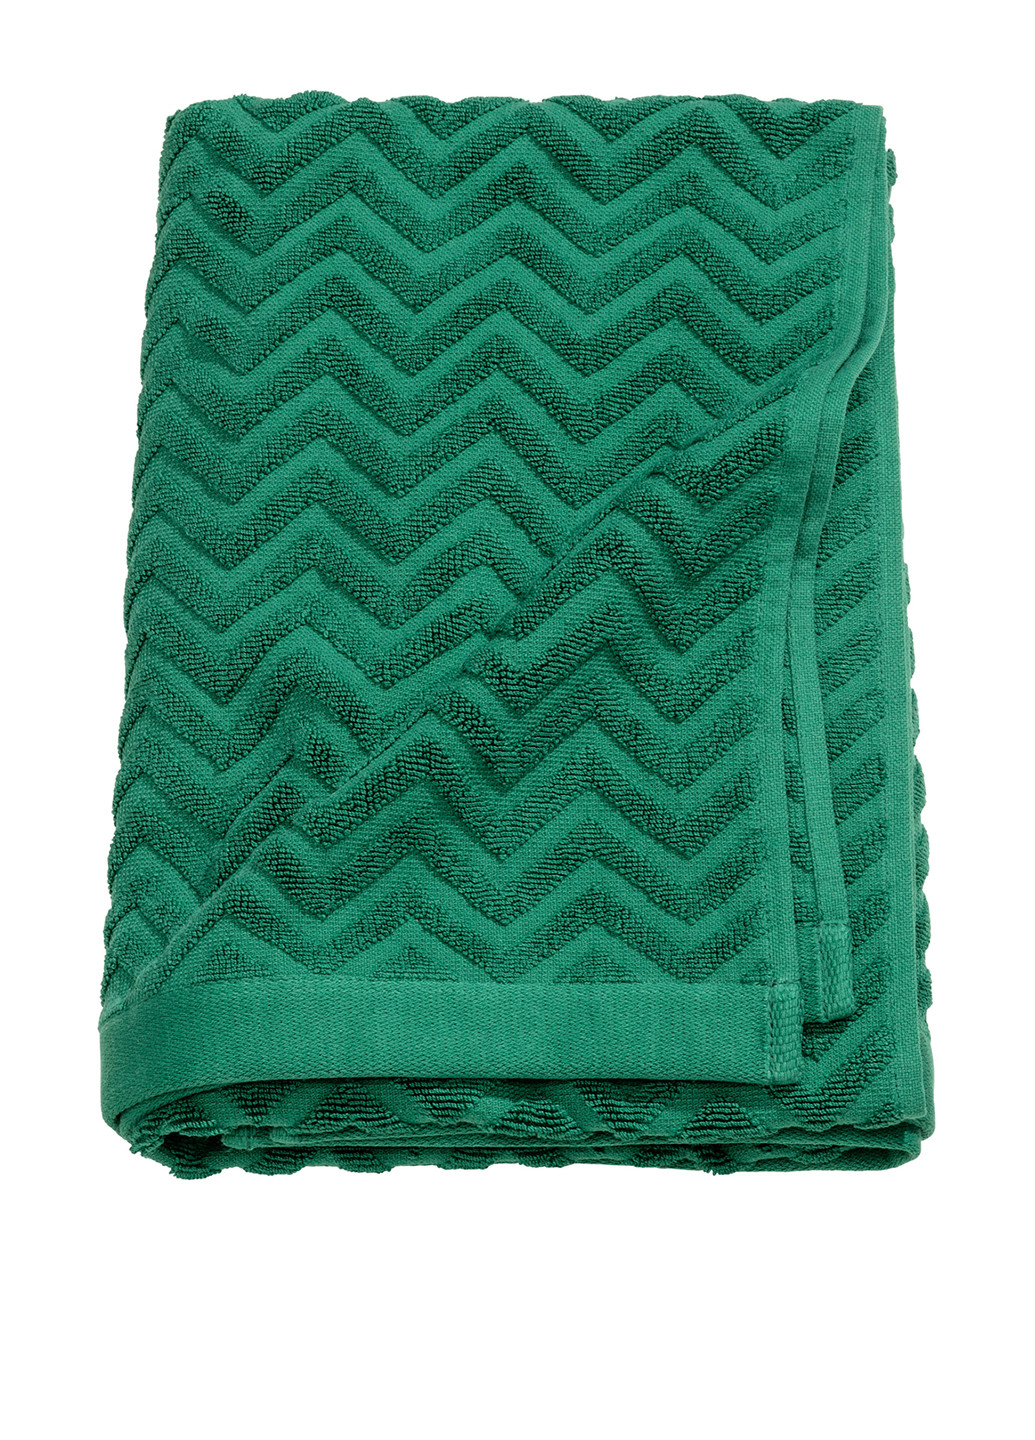 H&M рушник, 70х140 см геометричний зелений виробництво - Бангладеш